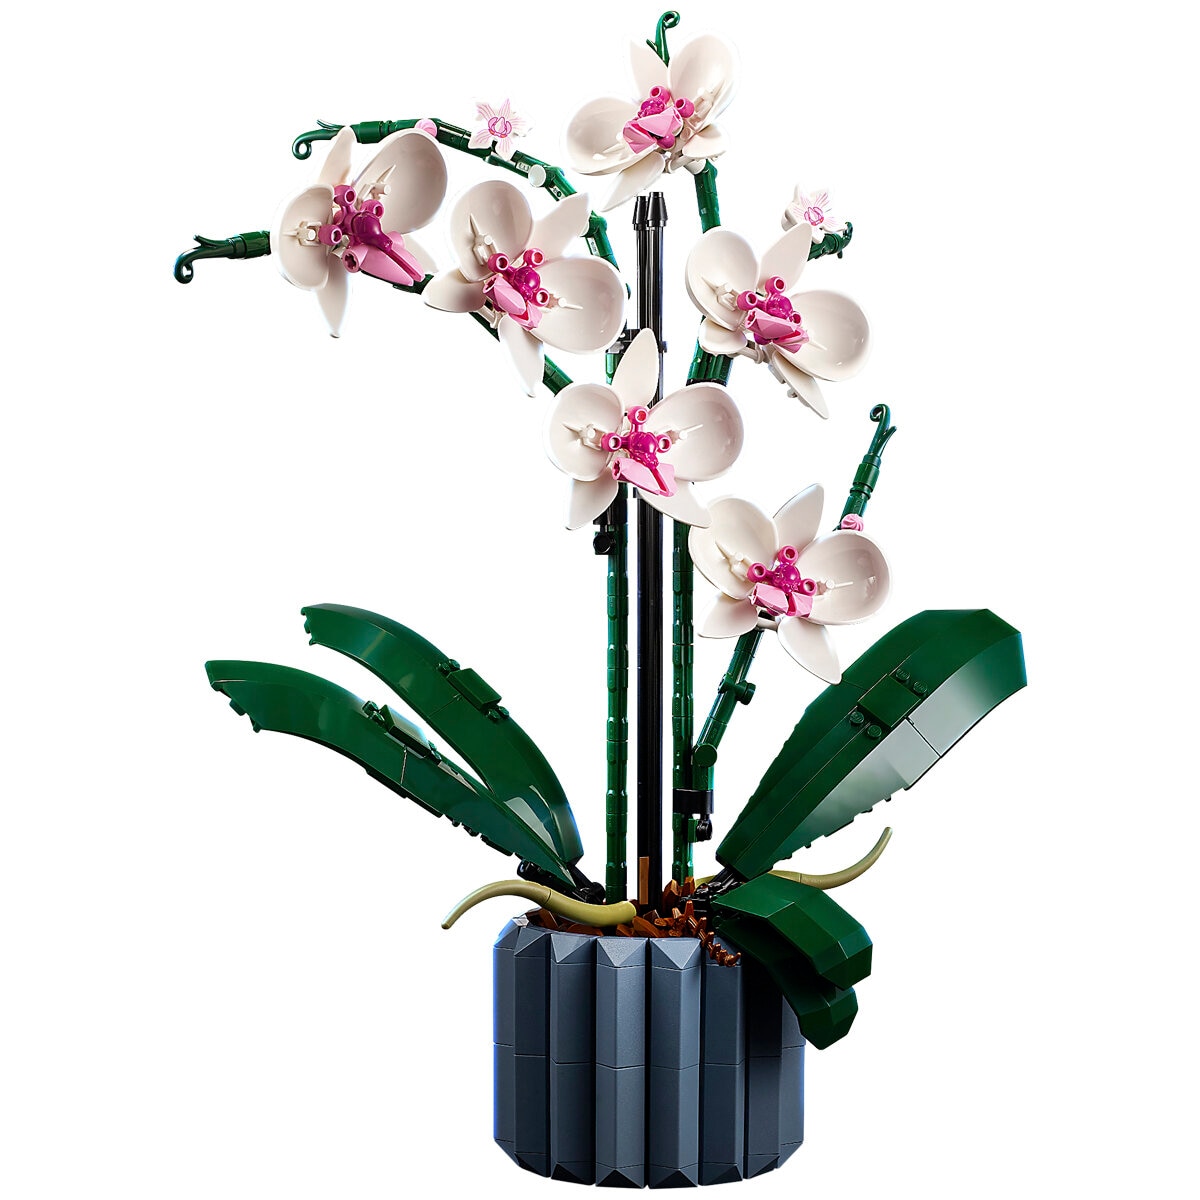 LEGO Icons Botanical Orchid 10311